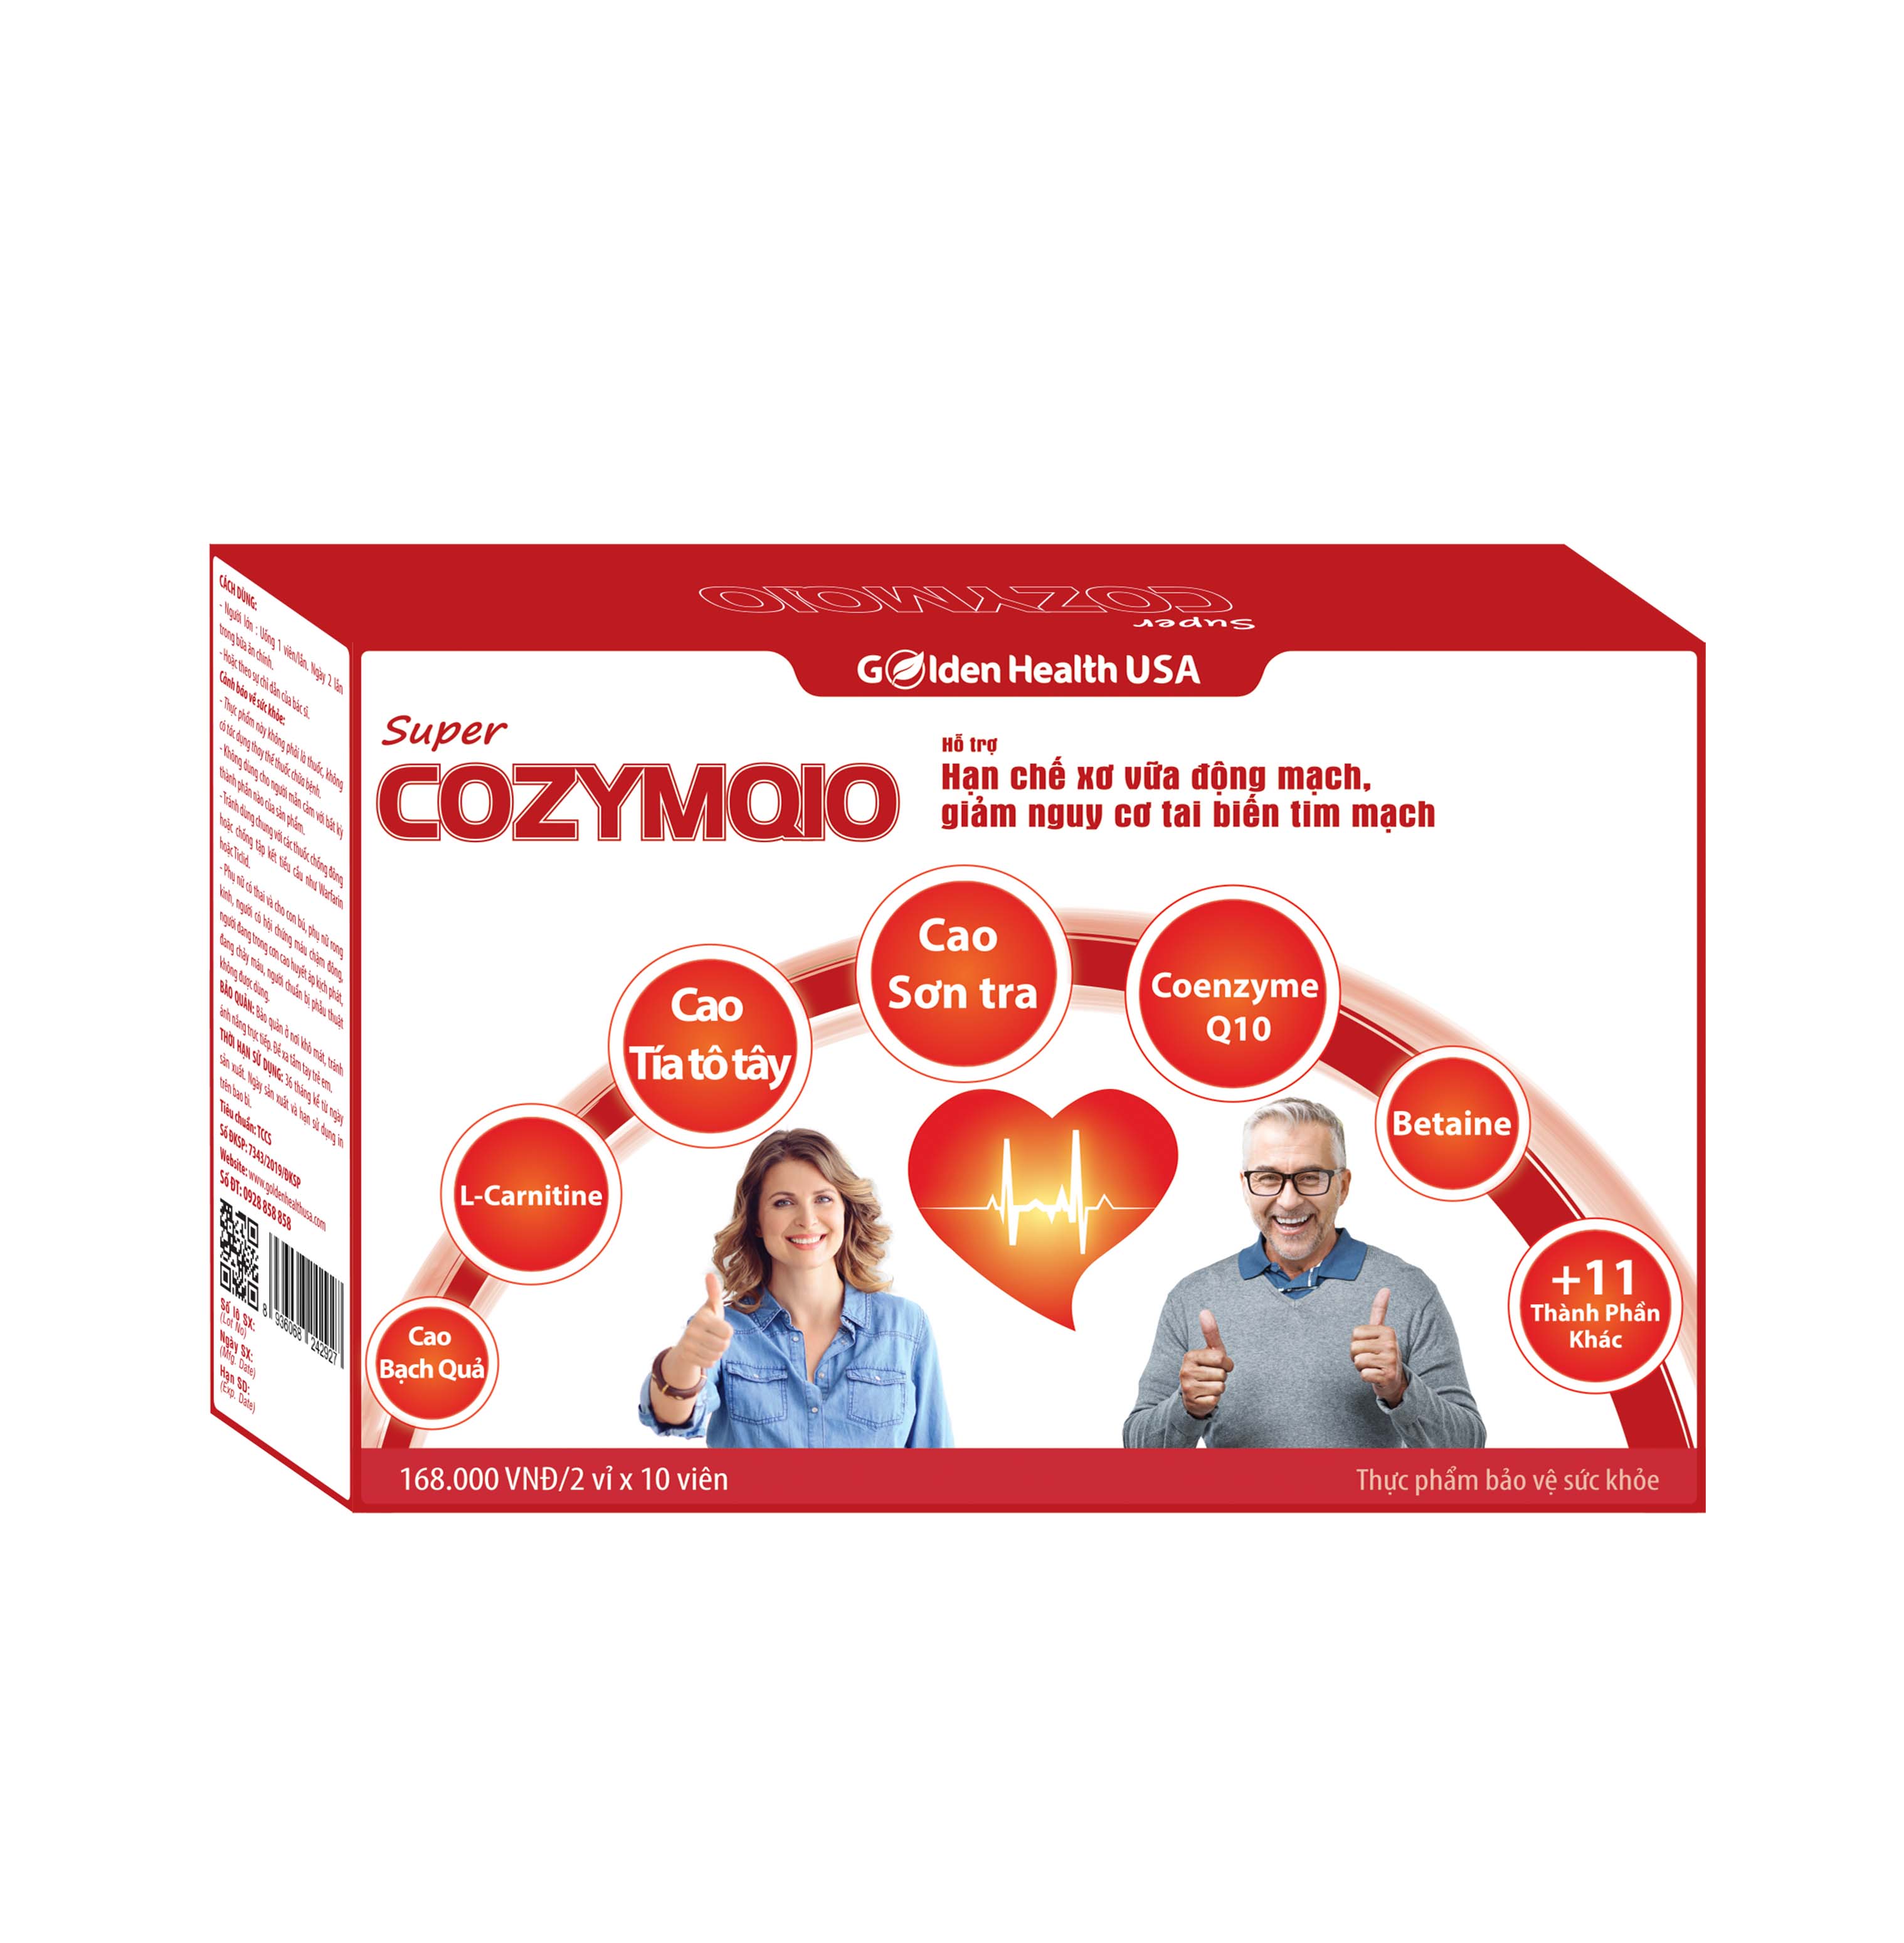 SUPER COZYMQ10- Hạn chế xơ vữa động mạch, giảm nguy cơ tai biến tim mạch